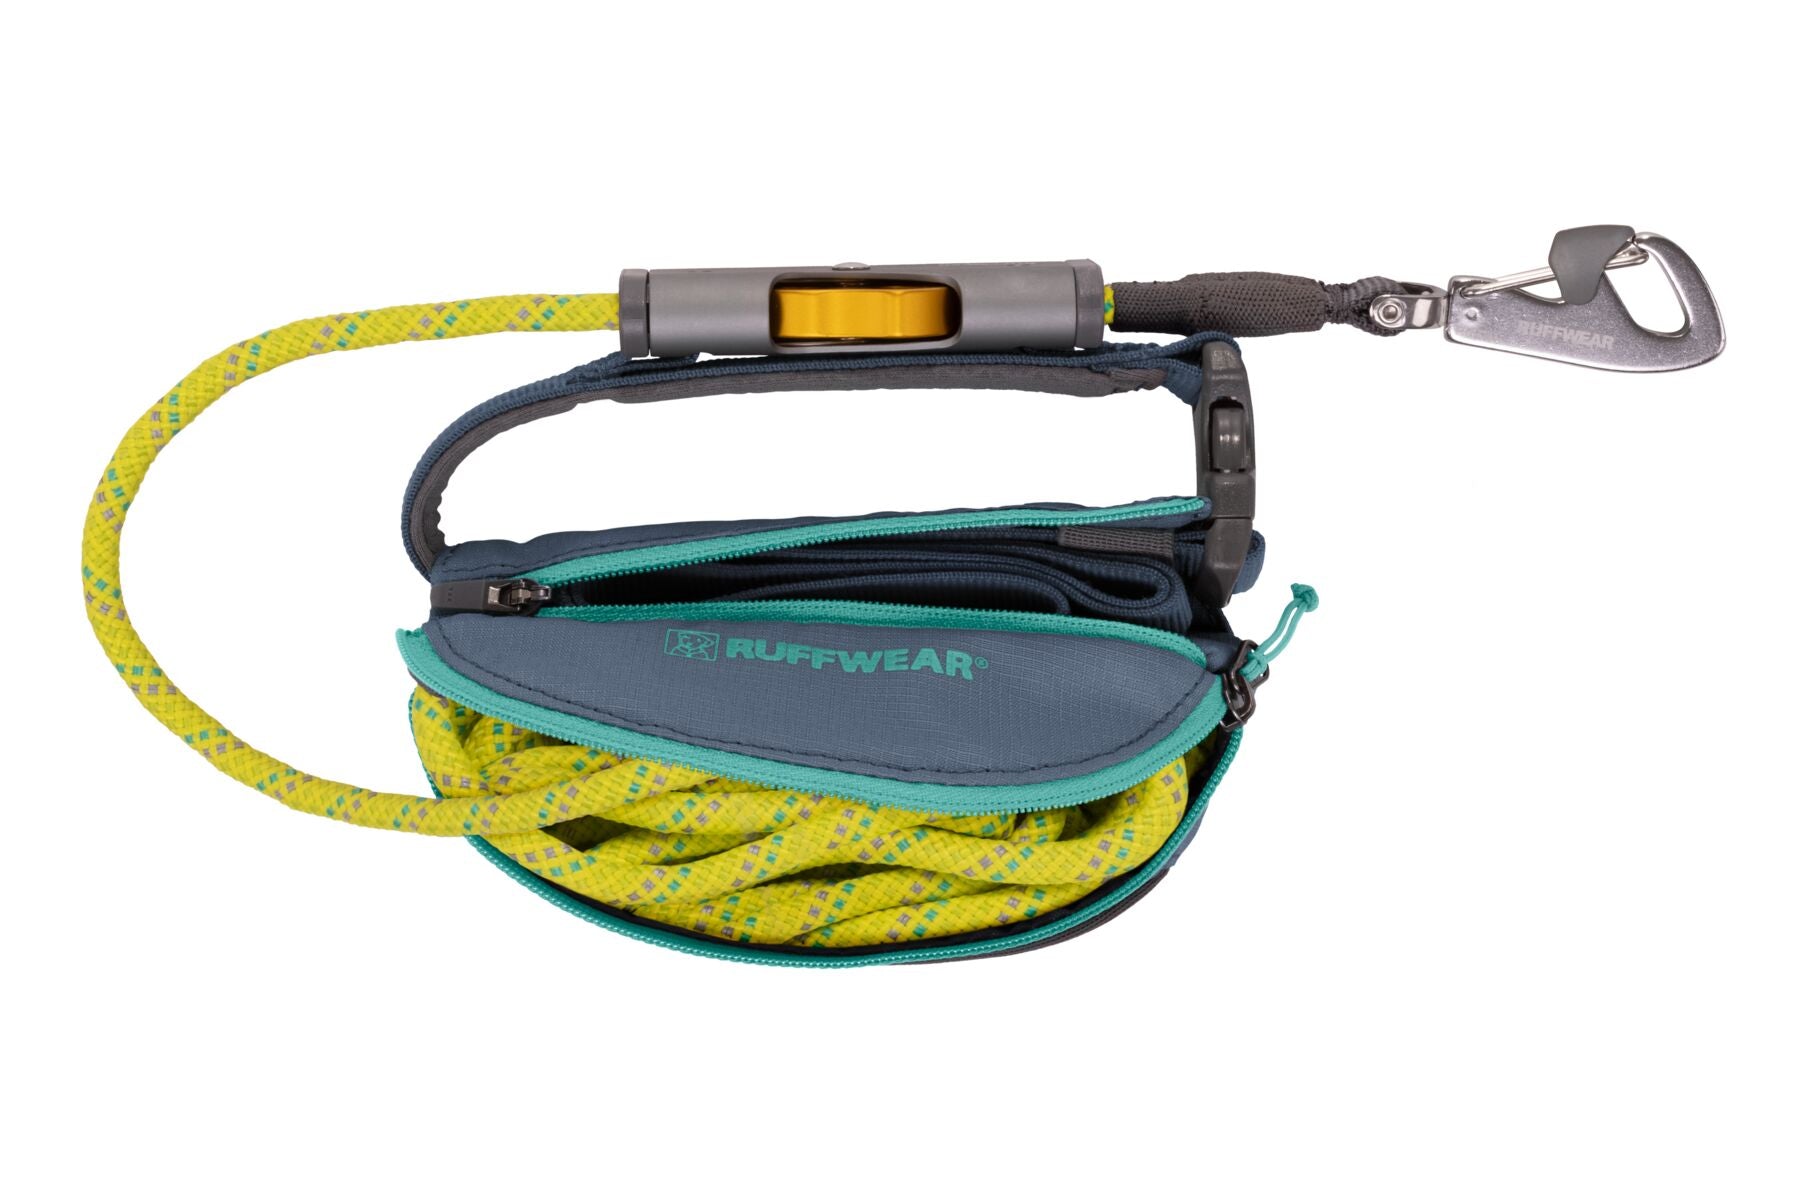 Hitch Hiker® Correa Larga Ajustable en Verde Fosfo (Slate Blue) con Sistema de Bloqueo y Manos Libres - Ruffwear